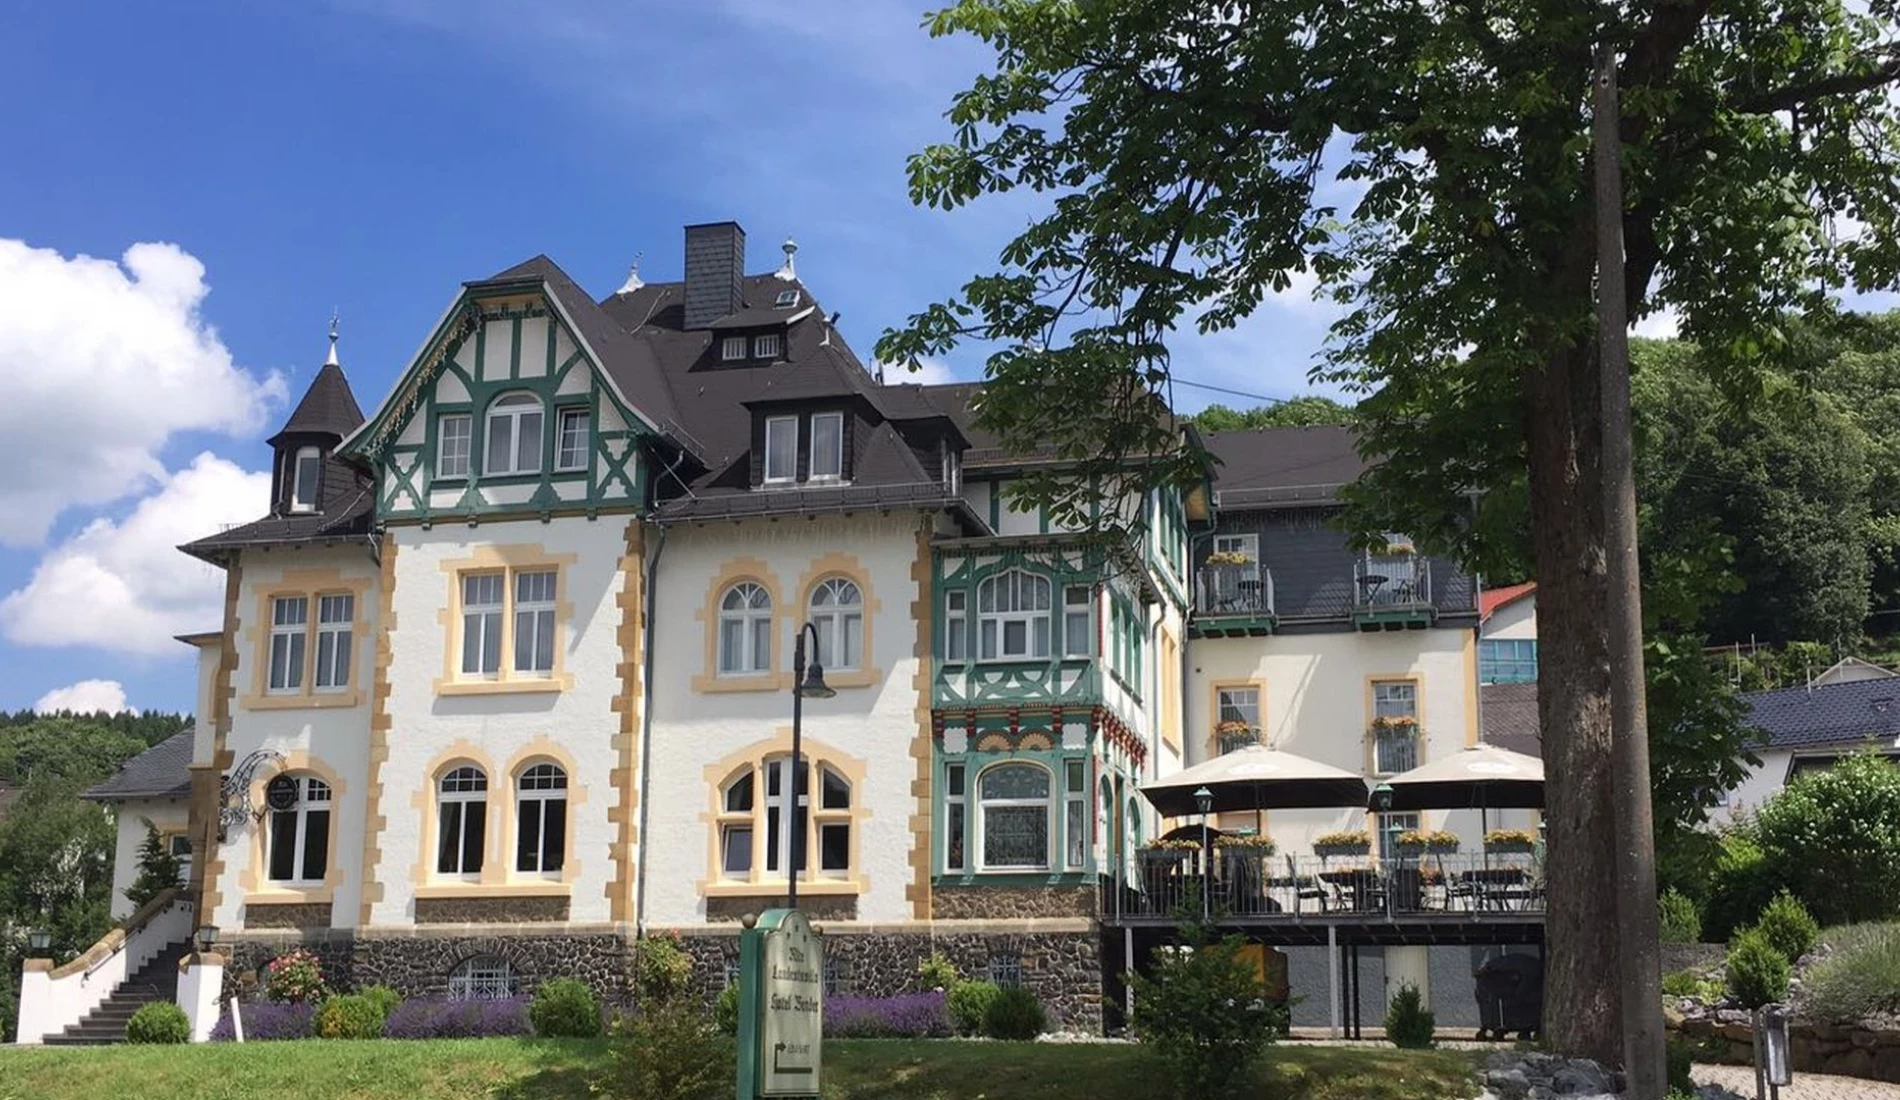 3 Tage Wandern im Herbst – Alte Landratsvilla Hotel Bender  (3 Sterne) in Westerburg, Rheinland-Pfalz inkl. Halbpension